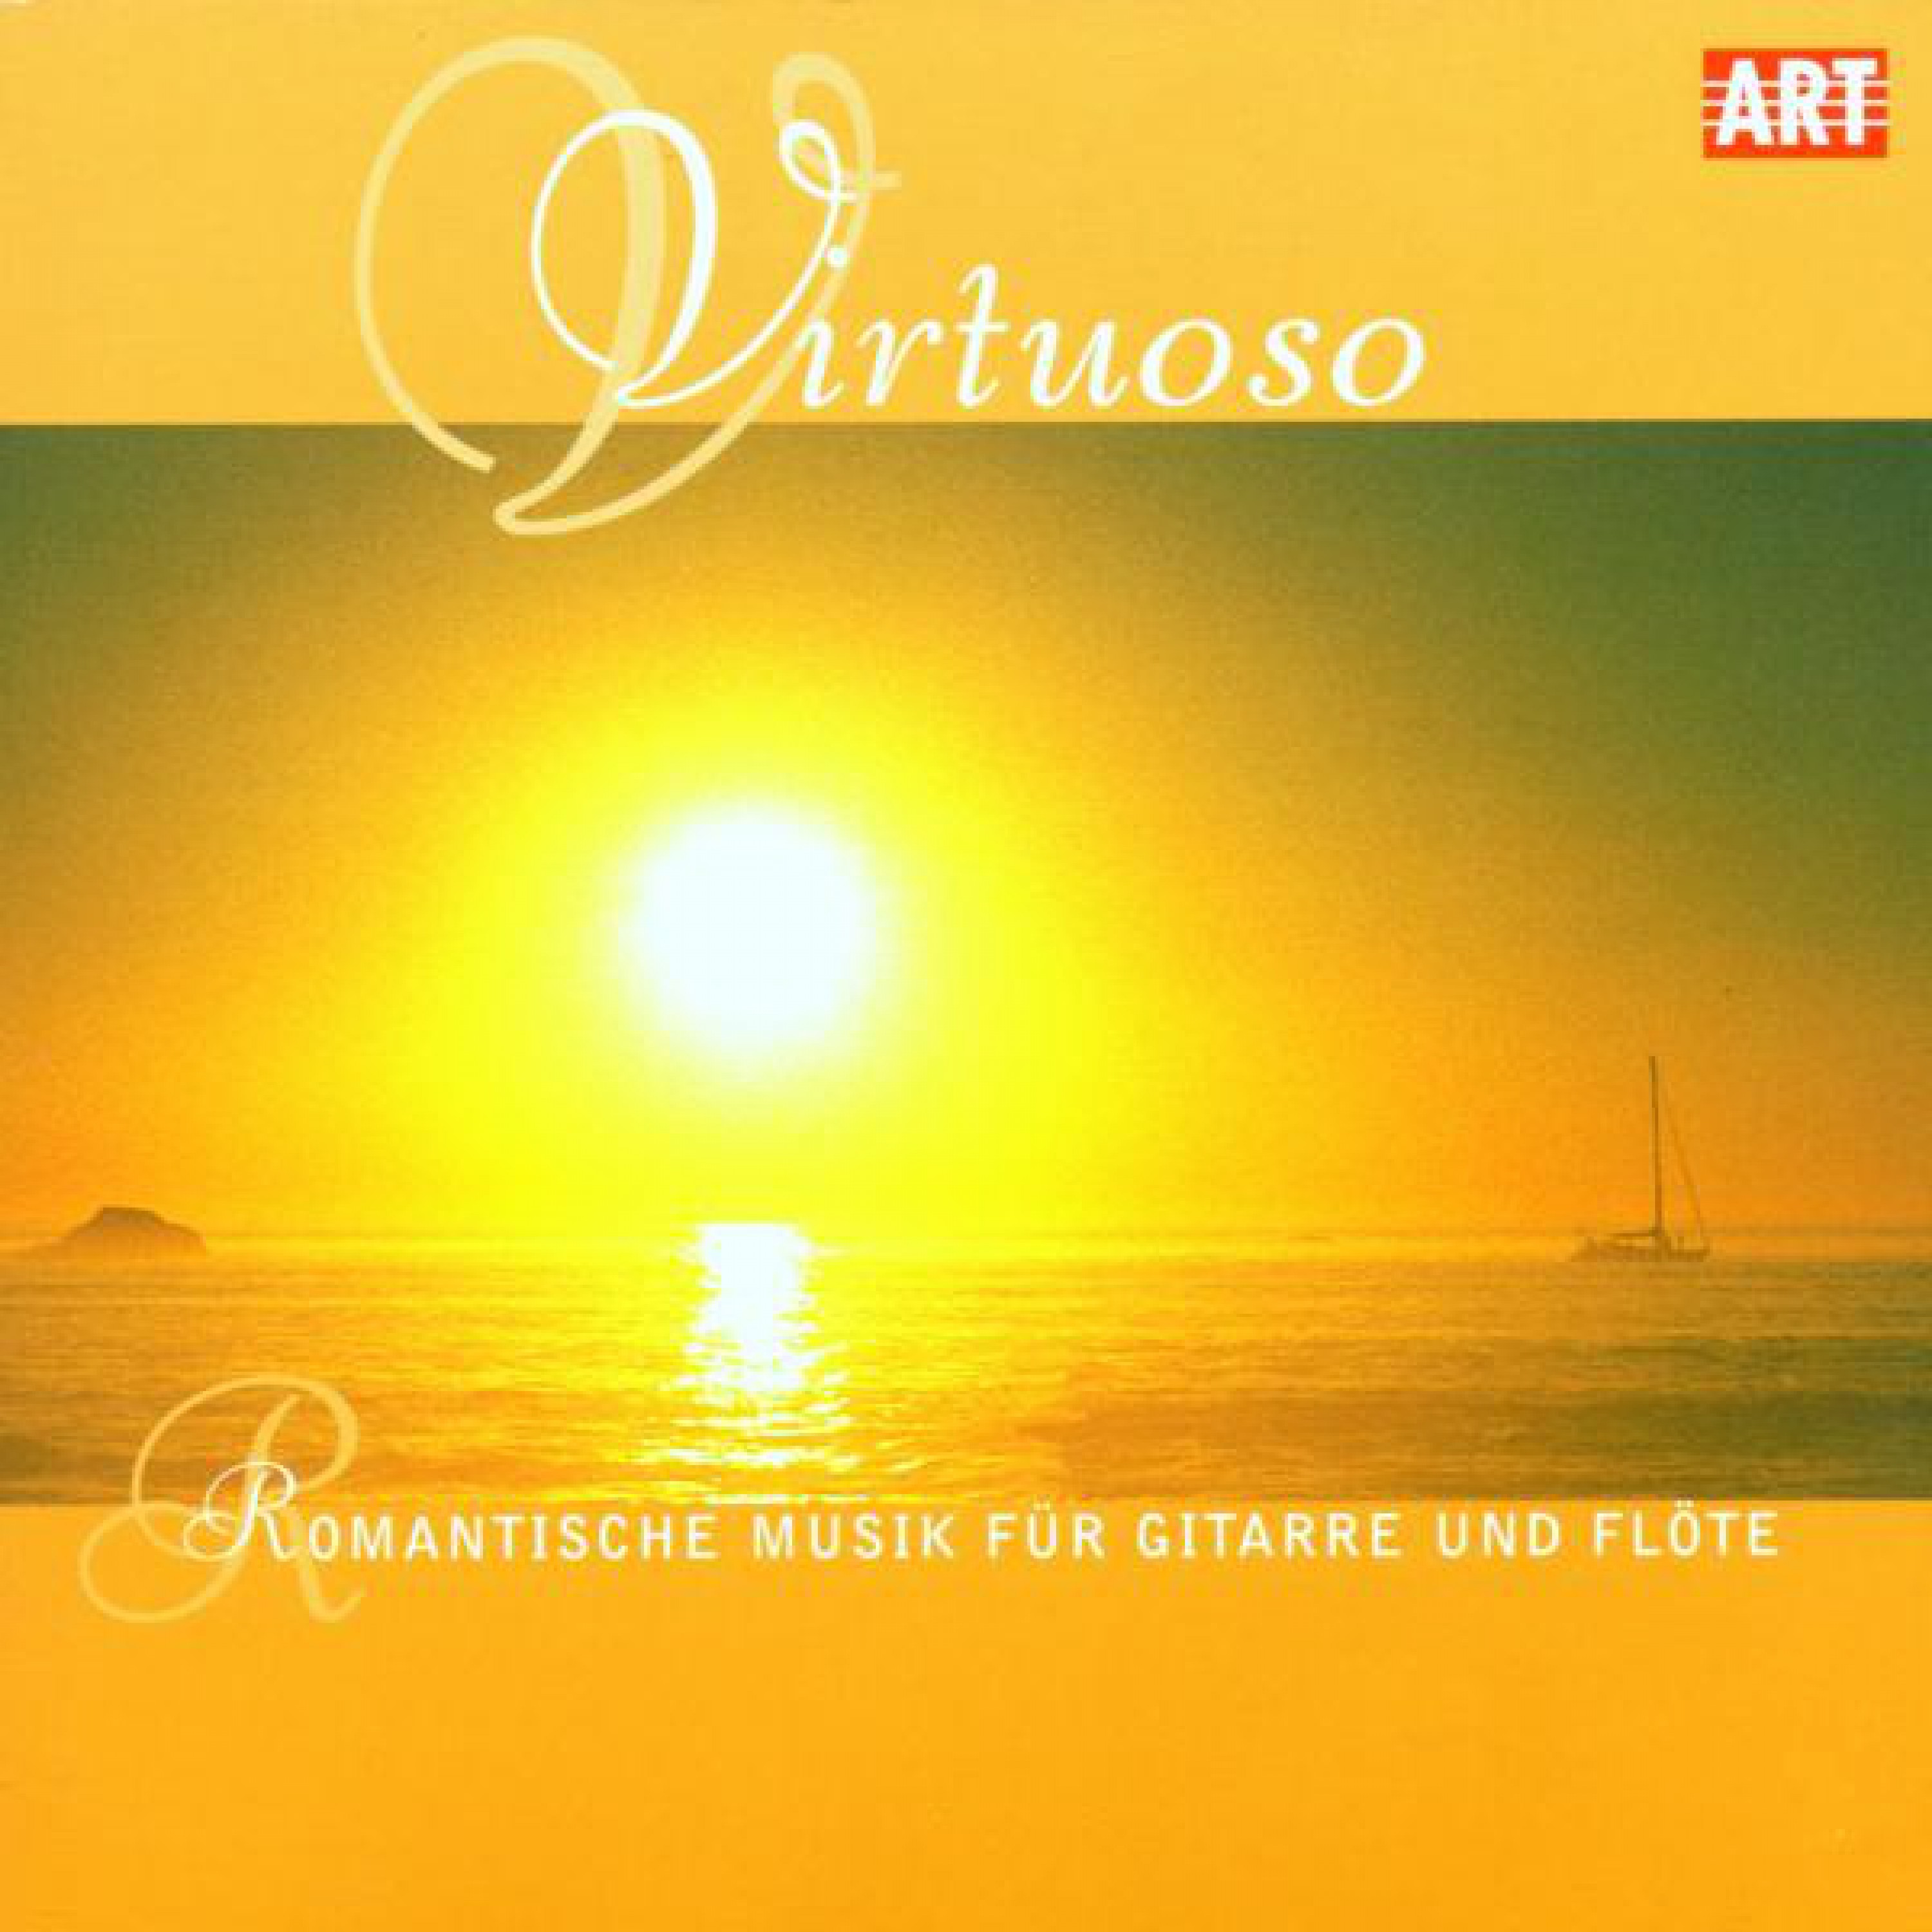 Great Sonata Op. 85 for Flute and Guitar: Allegretto espressivo